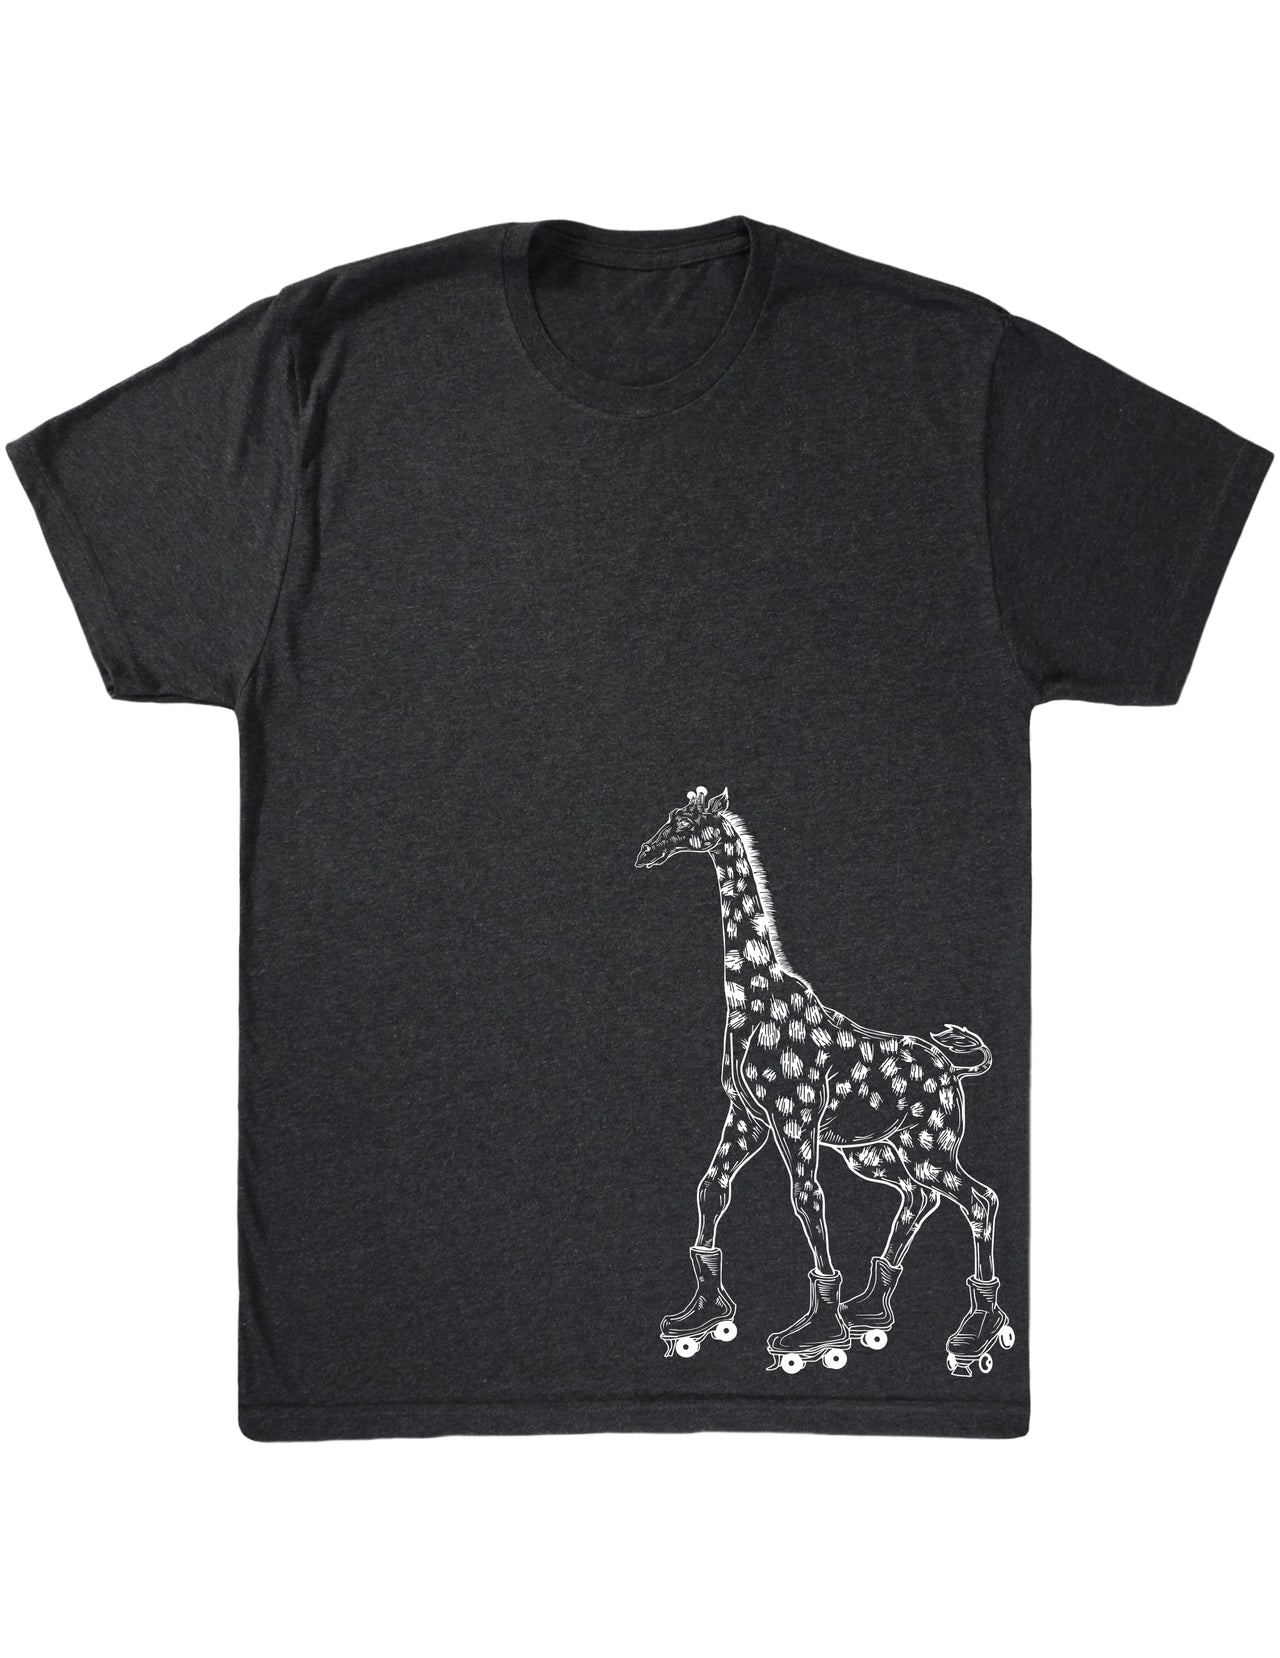 SEEMBO Giraffe Skater Skating Roller Skates Men's Tri-Blend T-Shirt Side Print